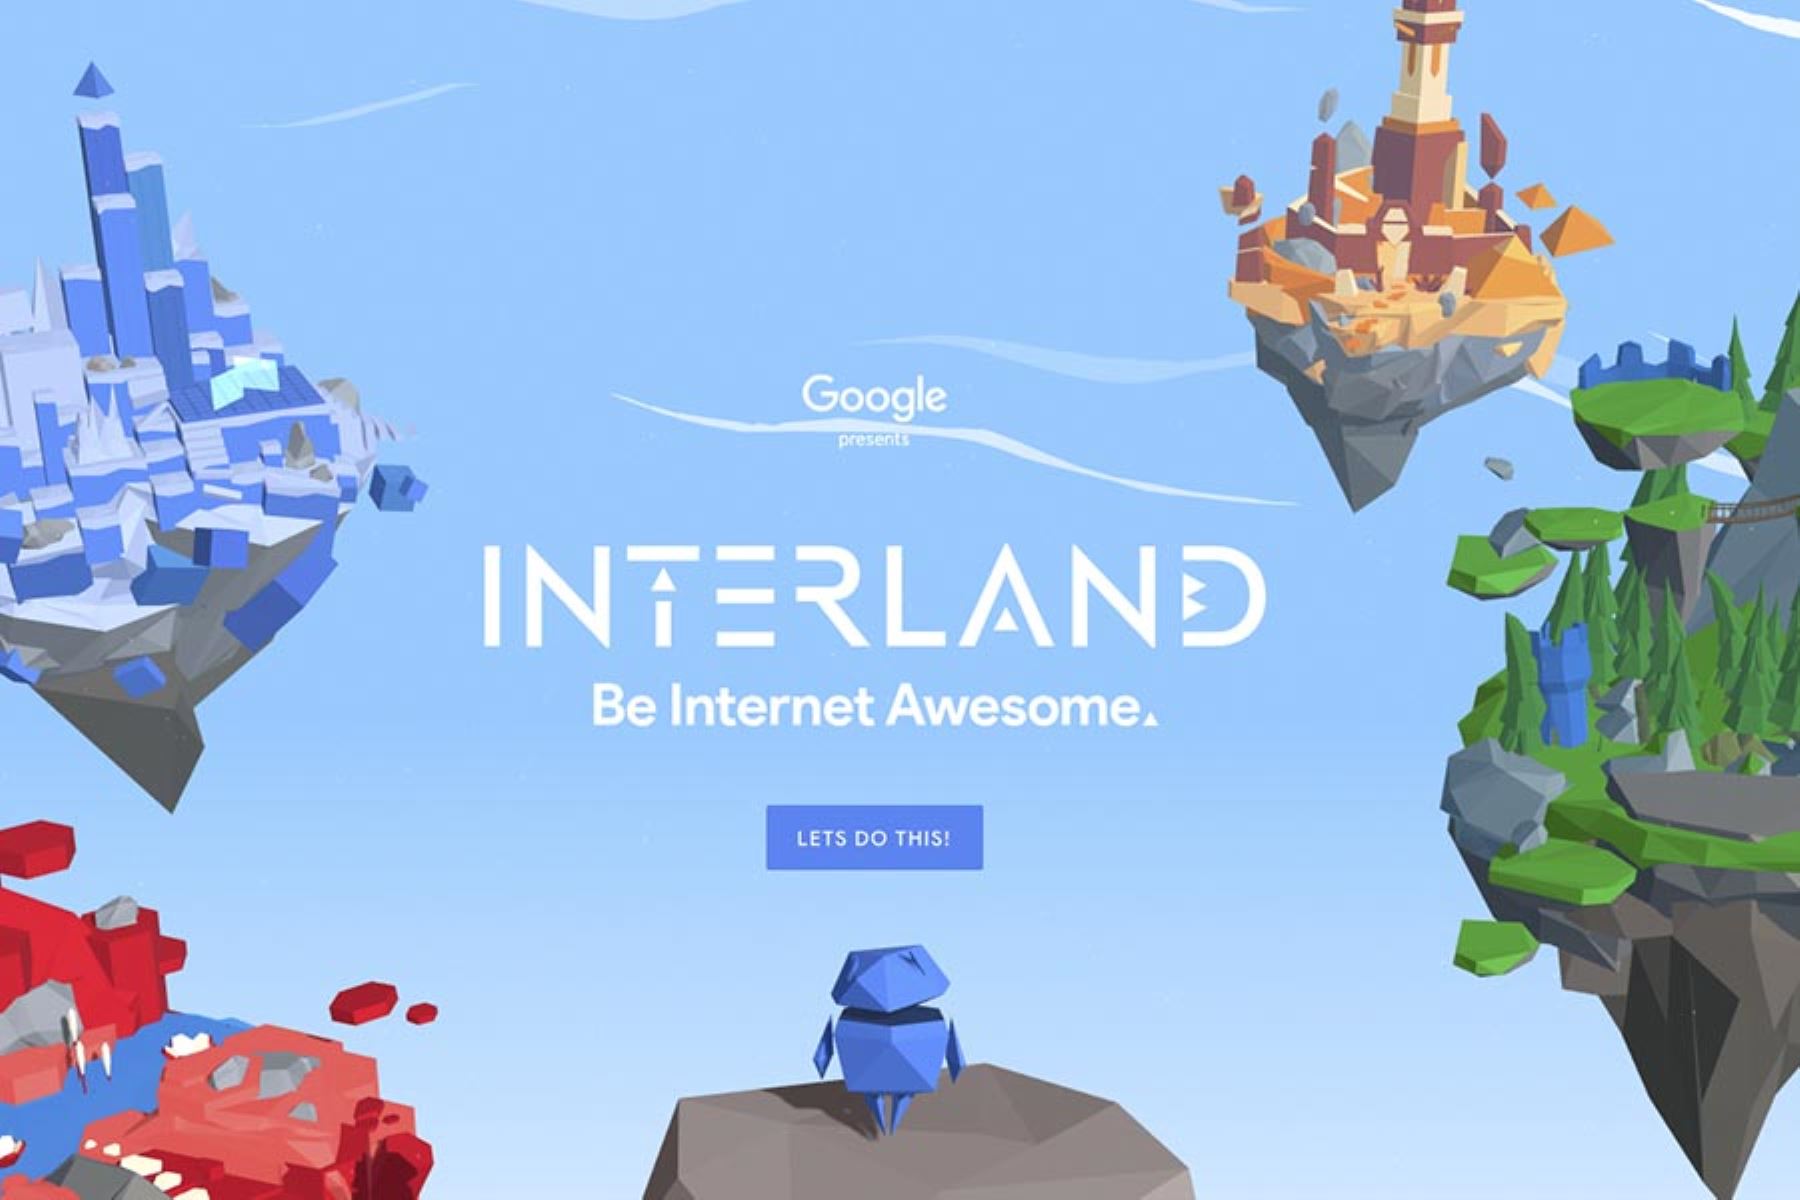 El juego interactivo llamado Interland permite aprender lecciones contra el bullying, crear contraseñas seguras y proteger la privacidad.